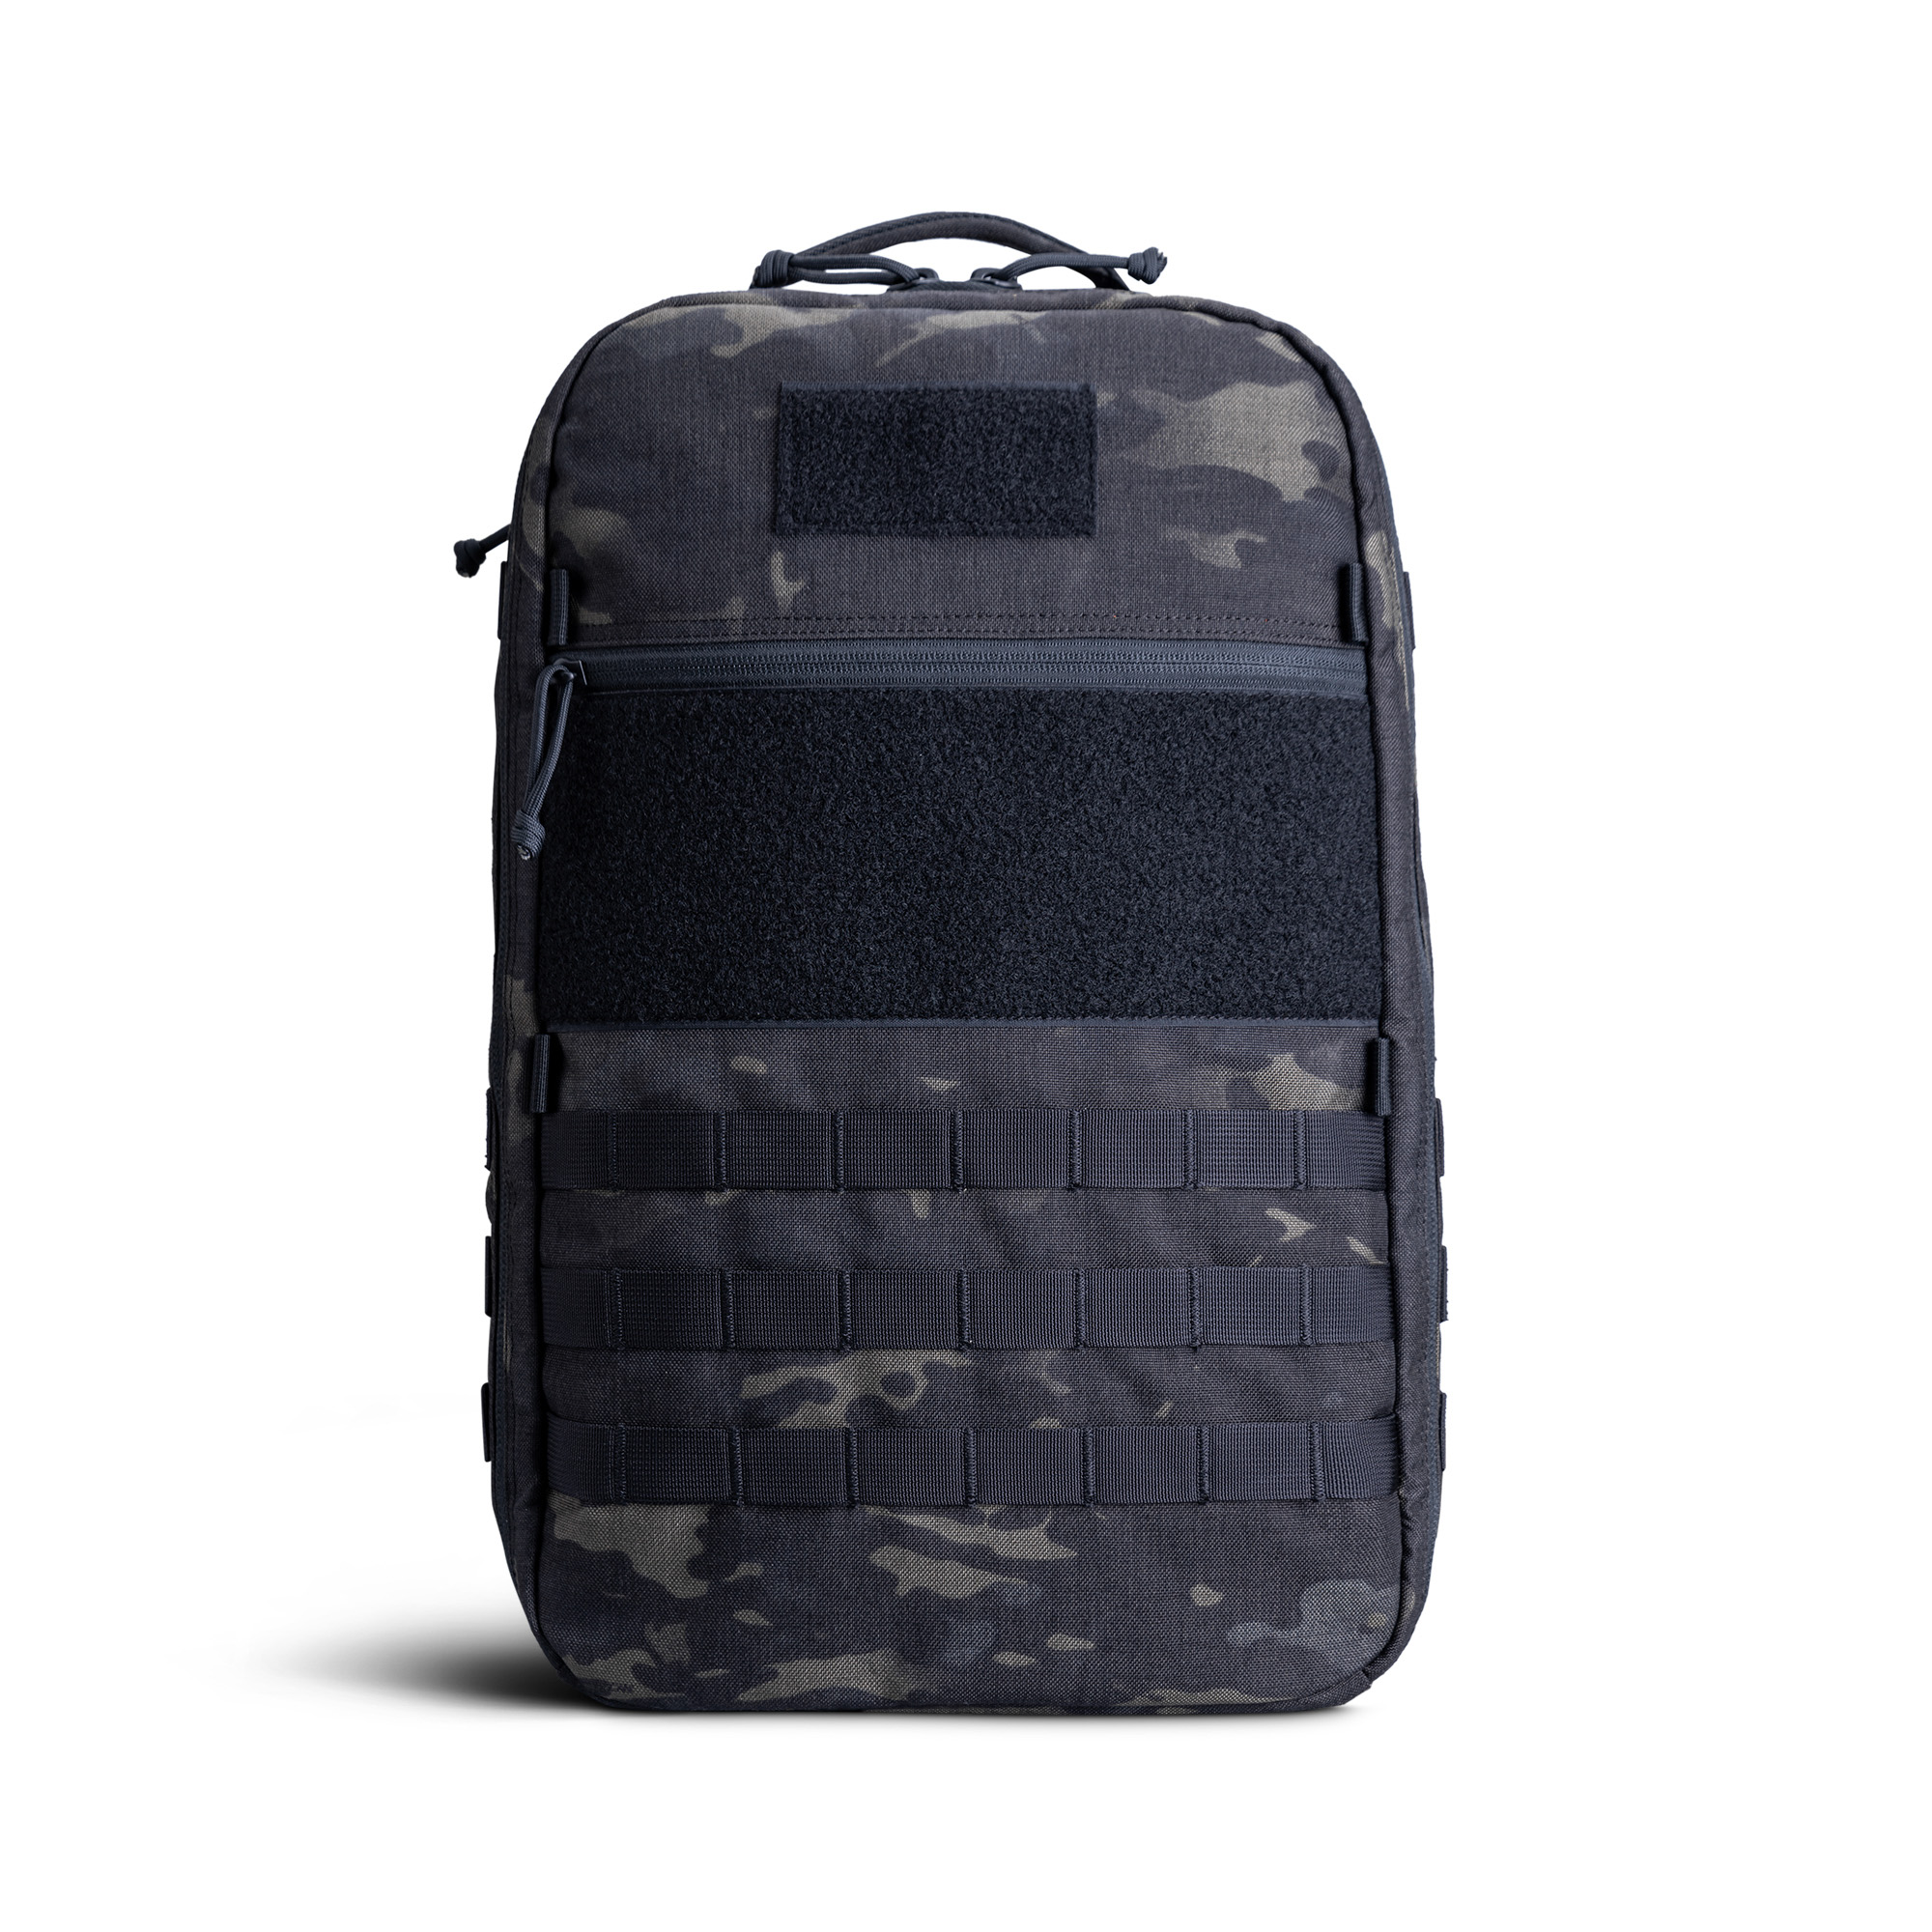 CT21 Backpack V2.0 - Multicam Black